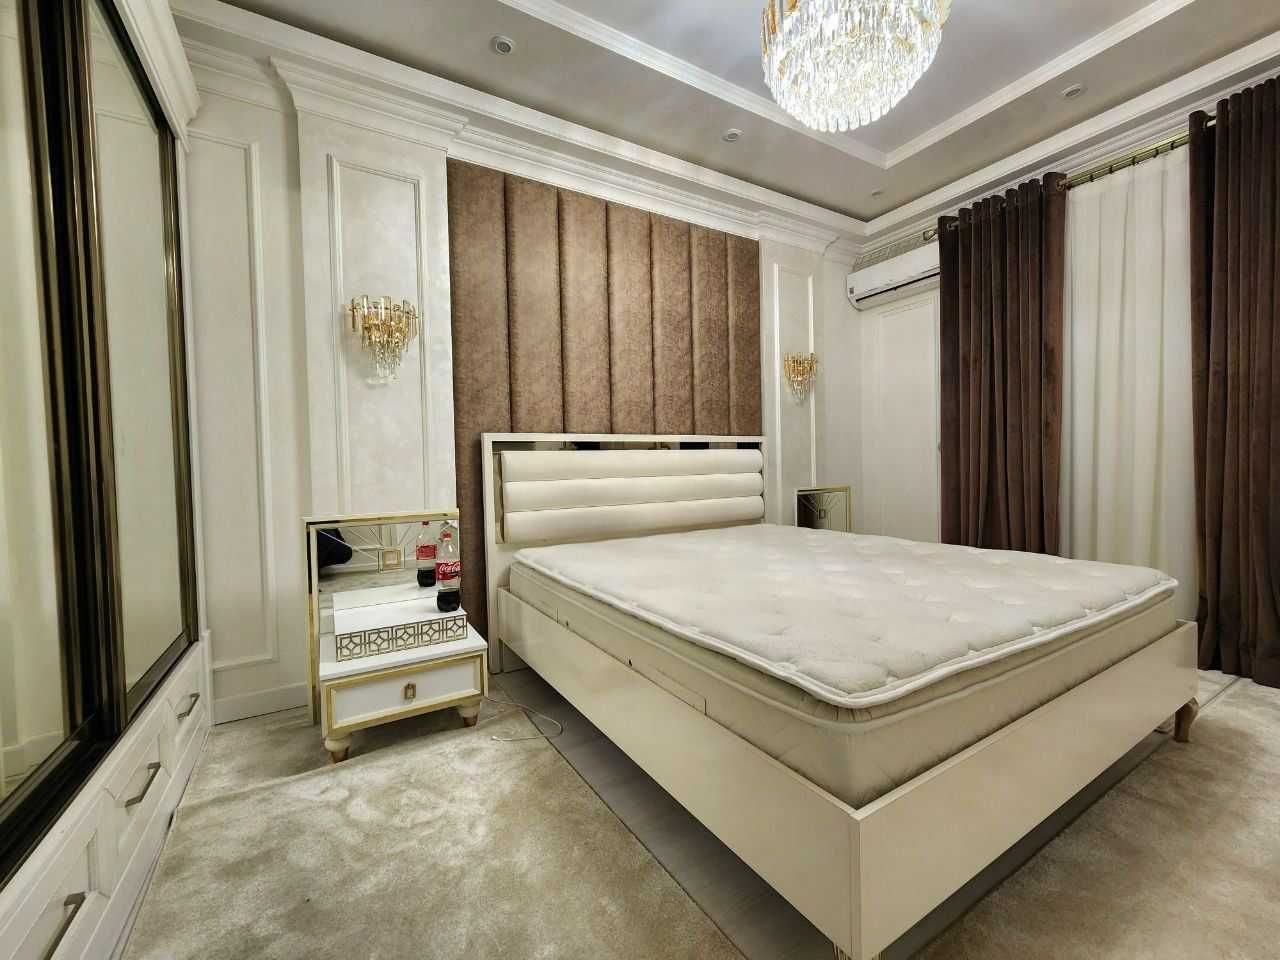 Ташкент Сити-Бульвар! Сдается новая квартира в элит комплексе!